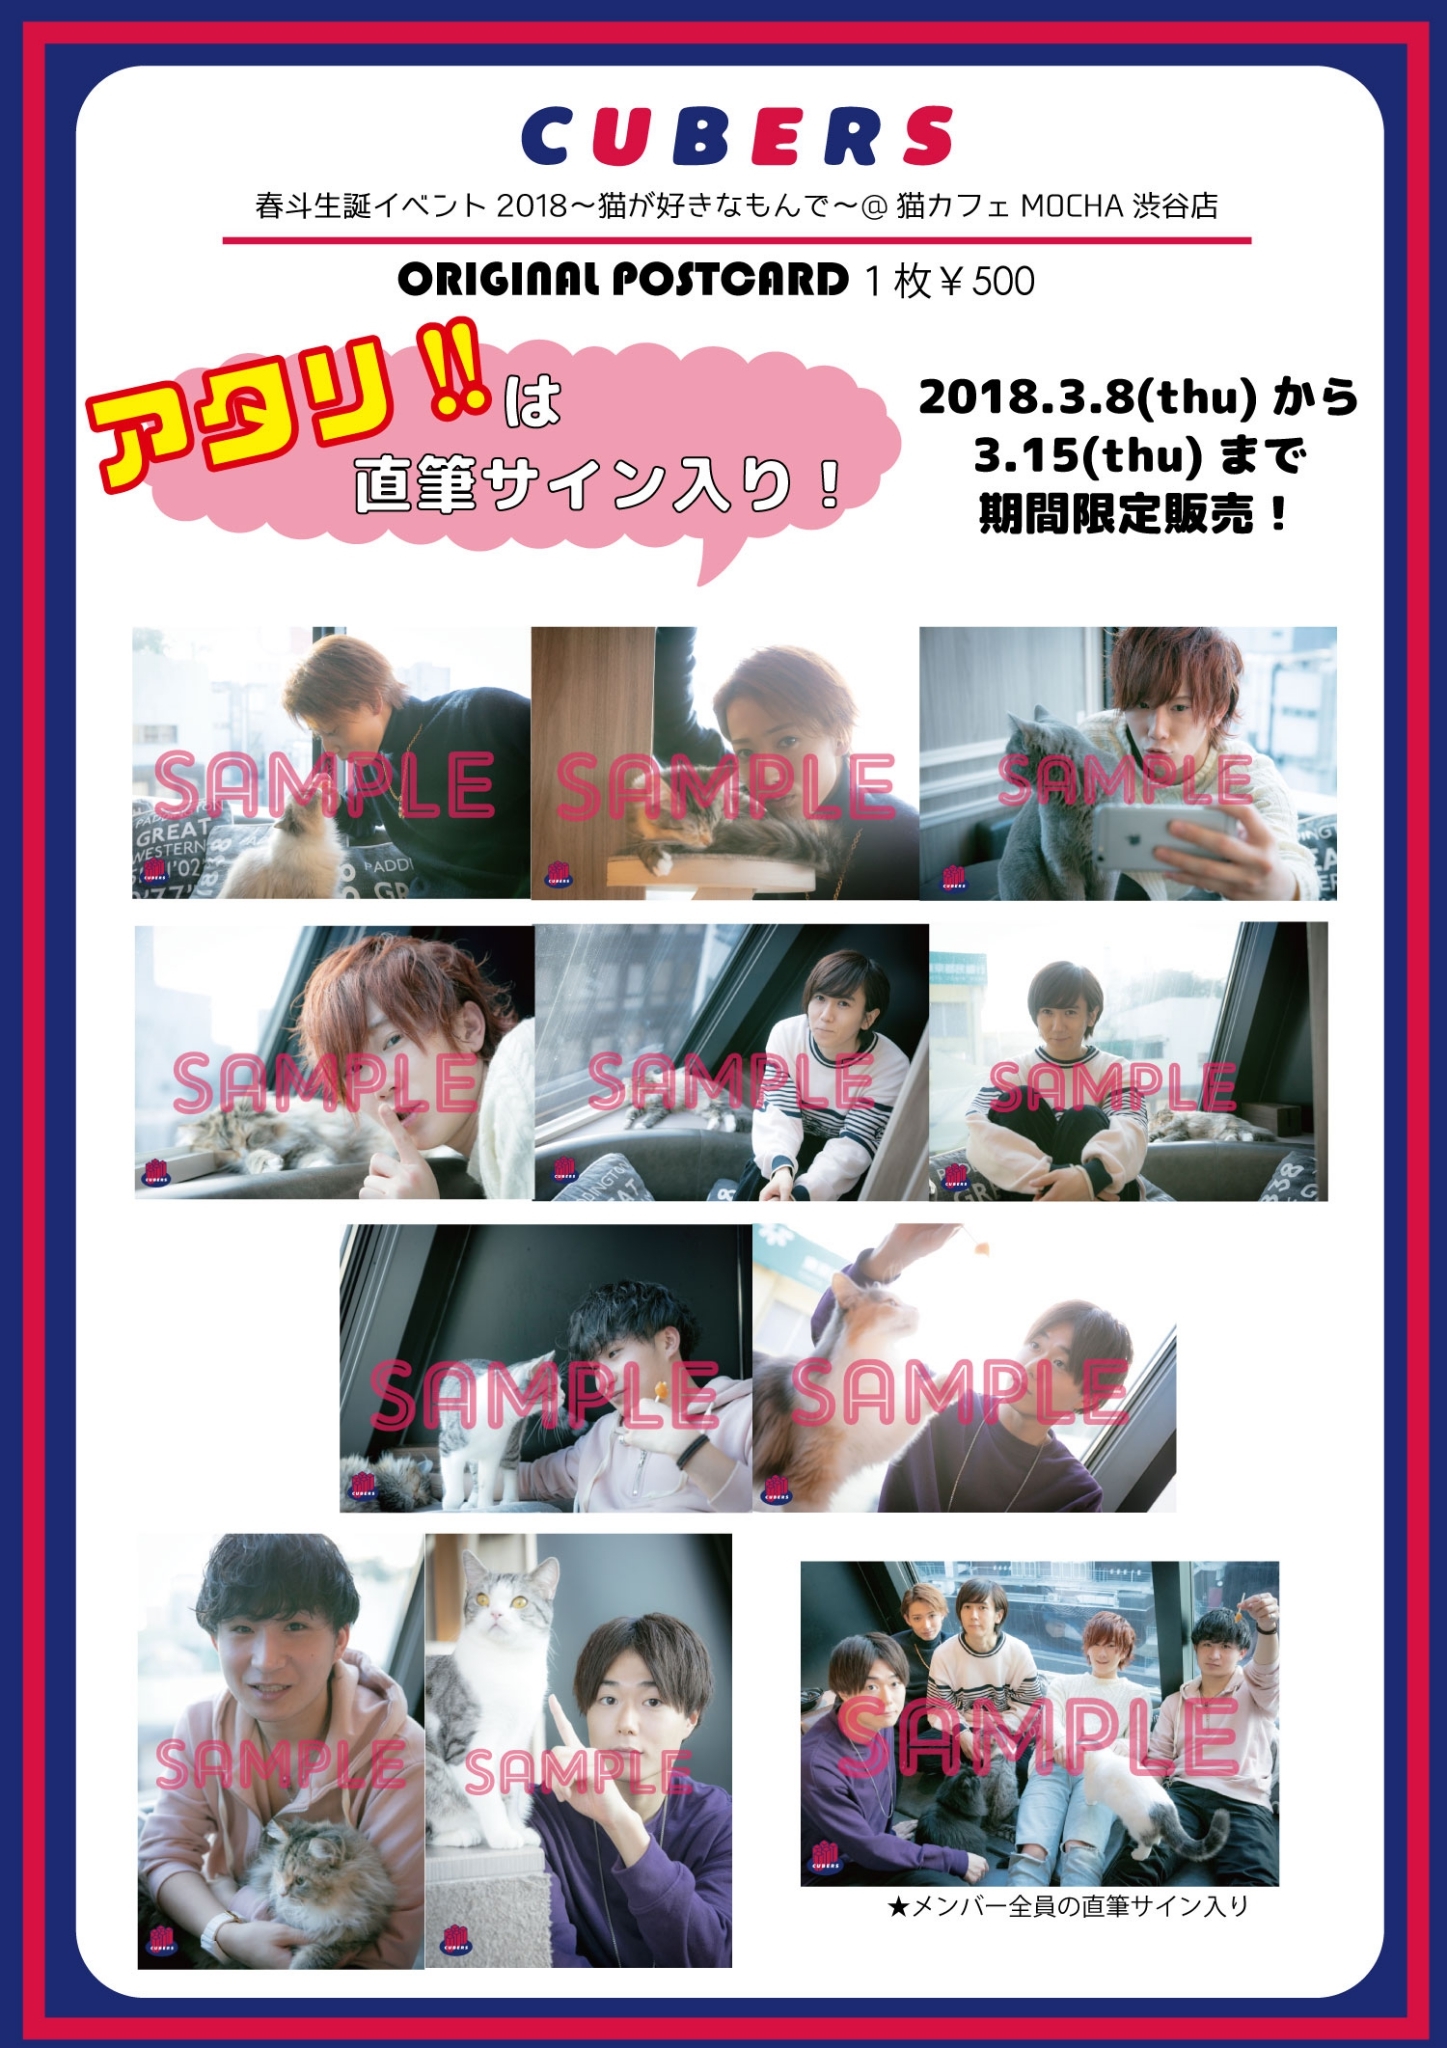 【NEWS】1週間限定で春斗生誕記念 猫カフェ”ポストカード”通販販売